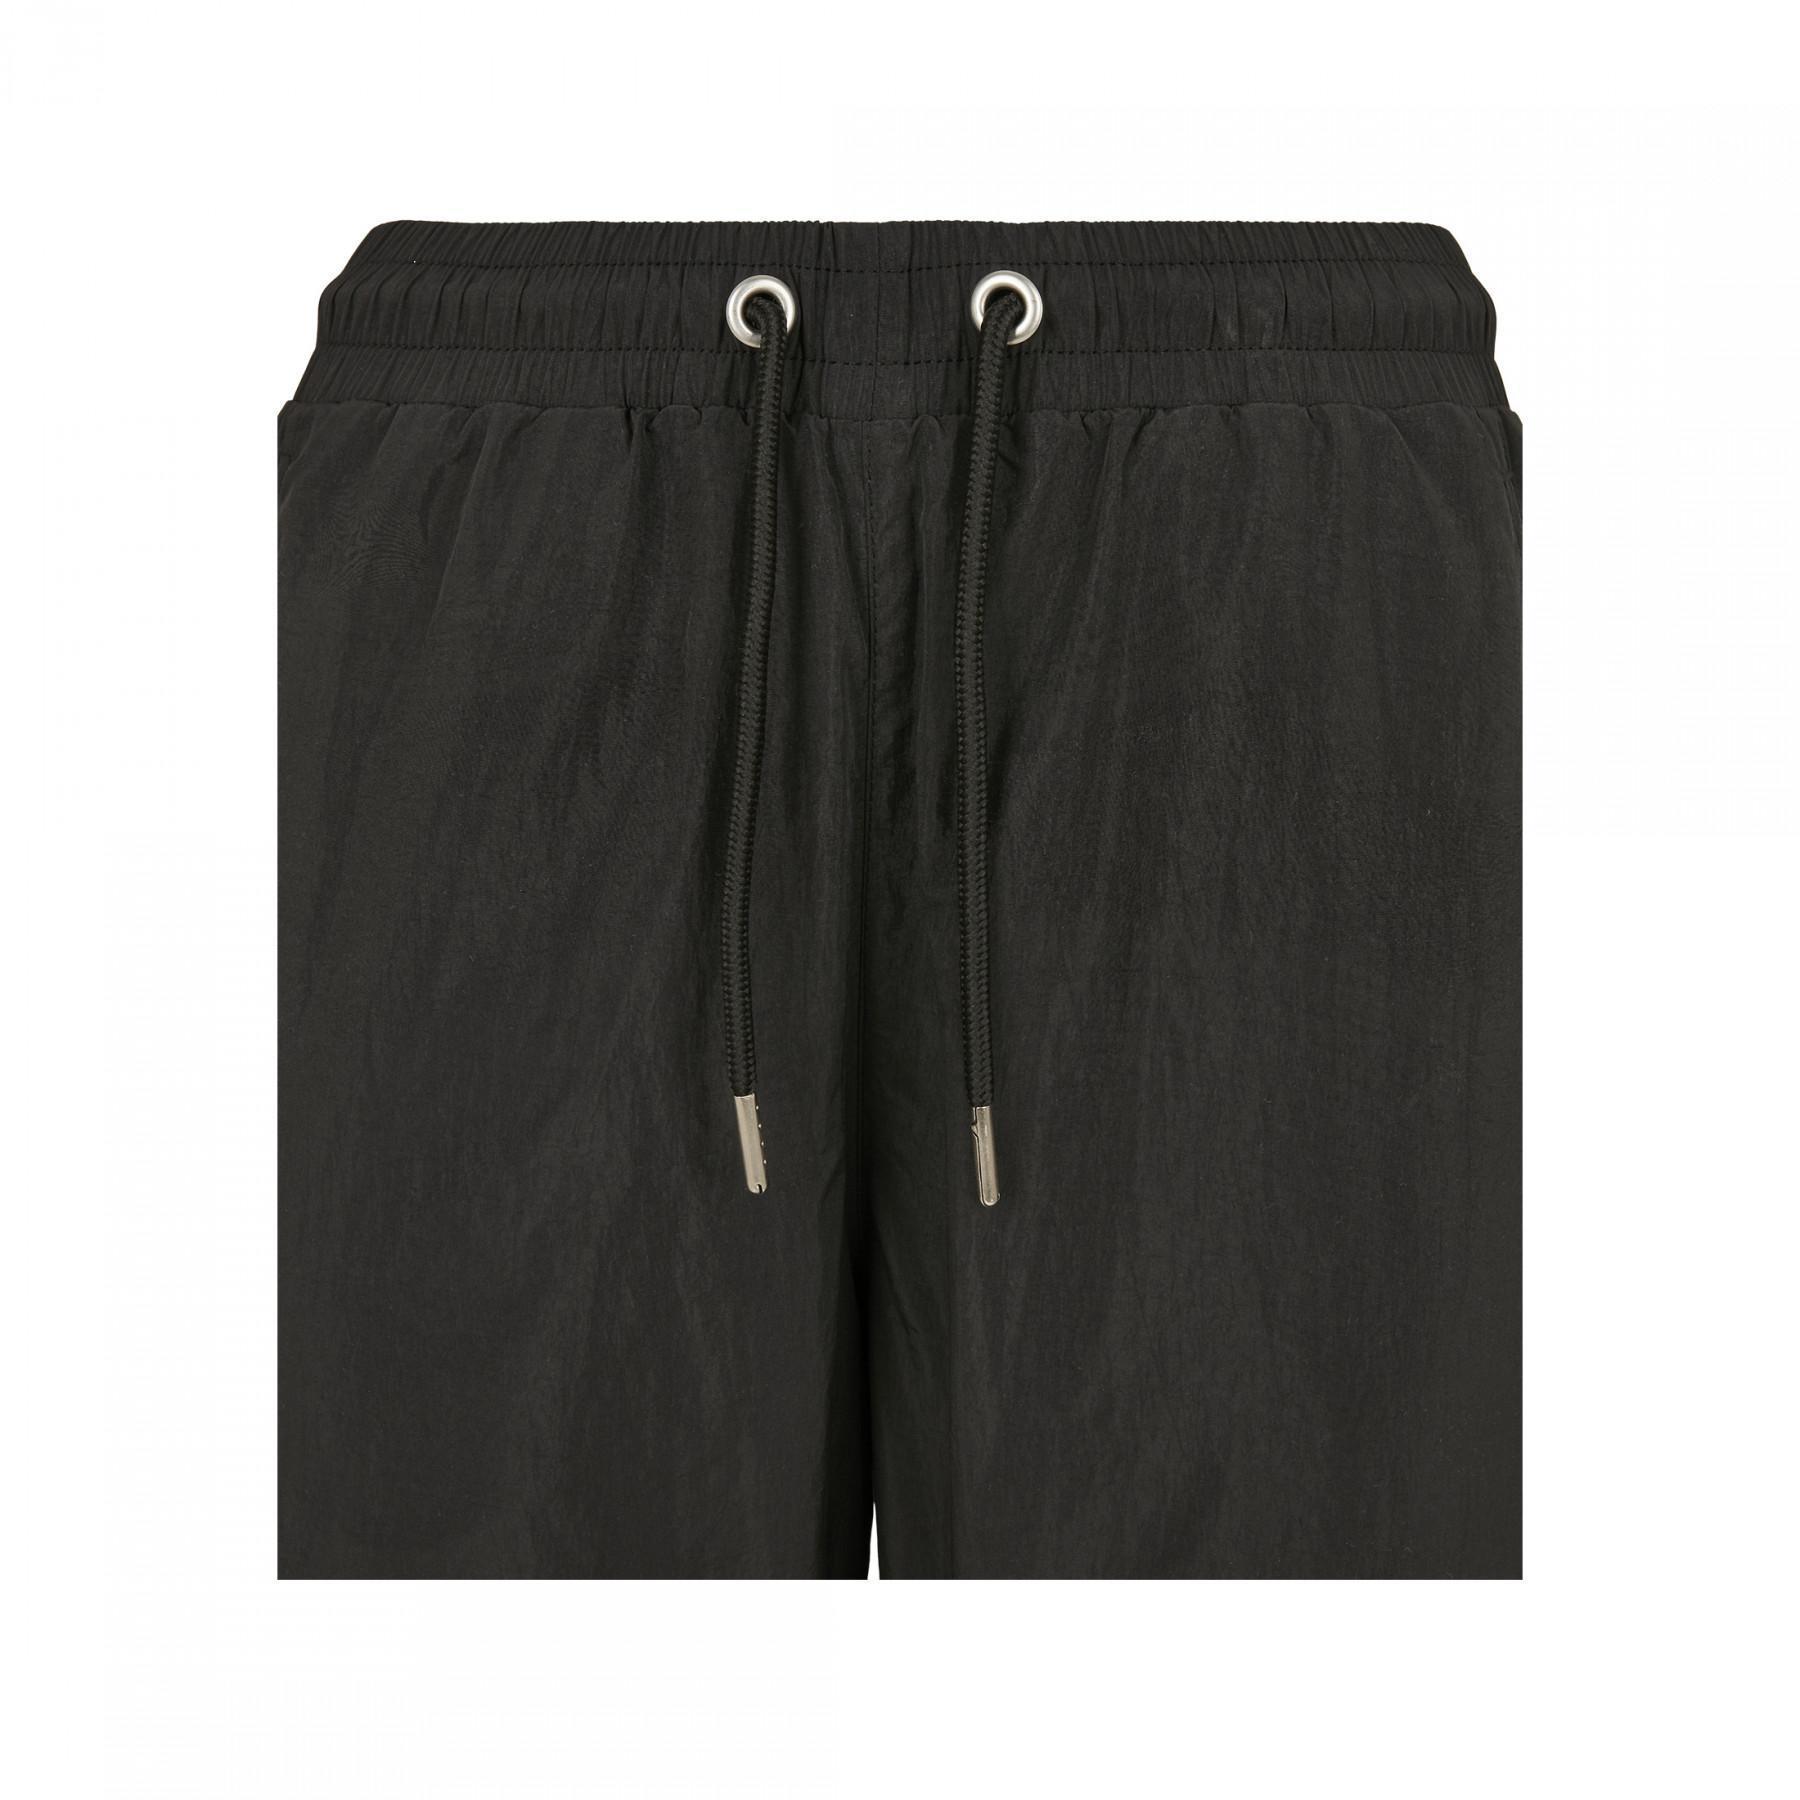 Spodnie damskie Urban Classics high waist crinkle nylon cargo